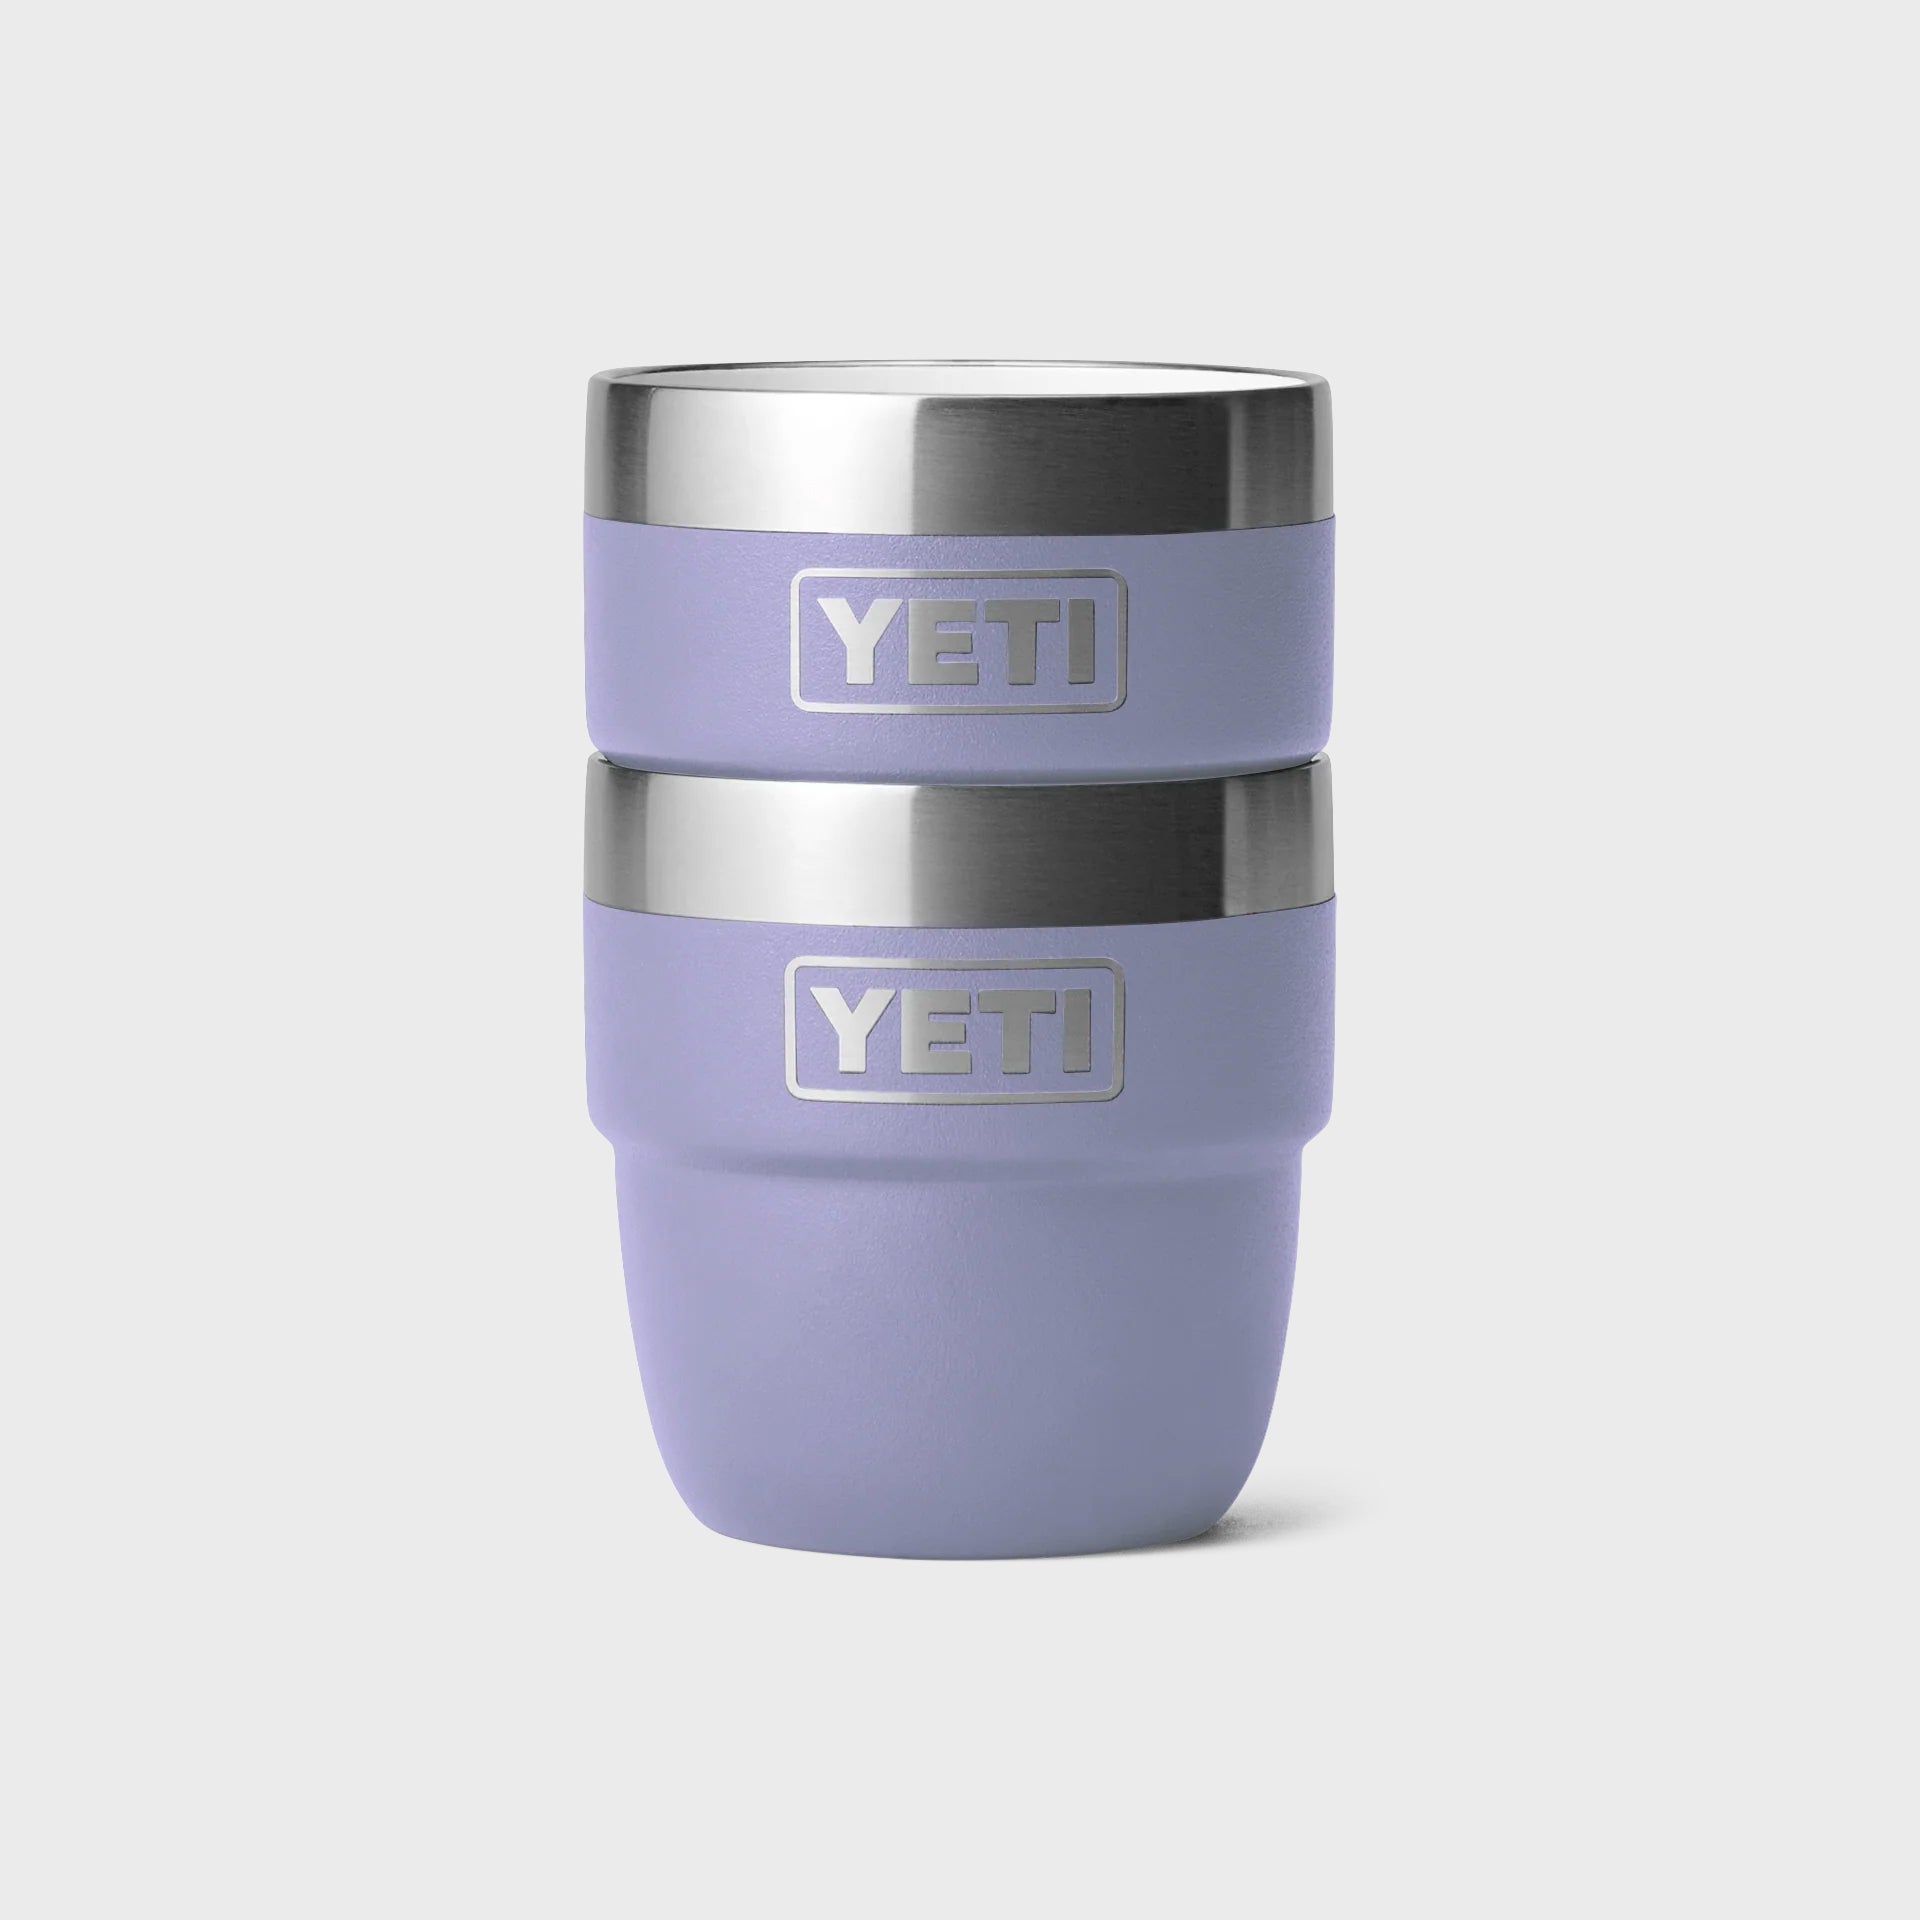 Yeti Rambler 6 oz Espresso 2pk Mug